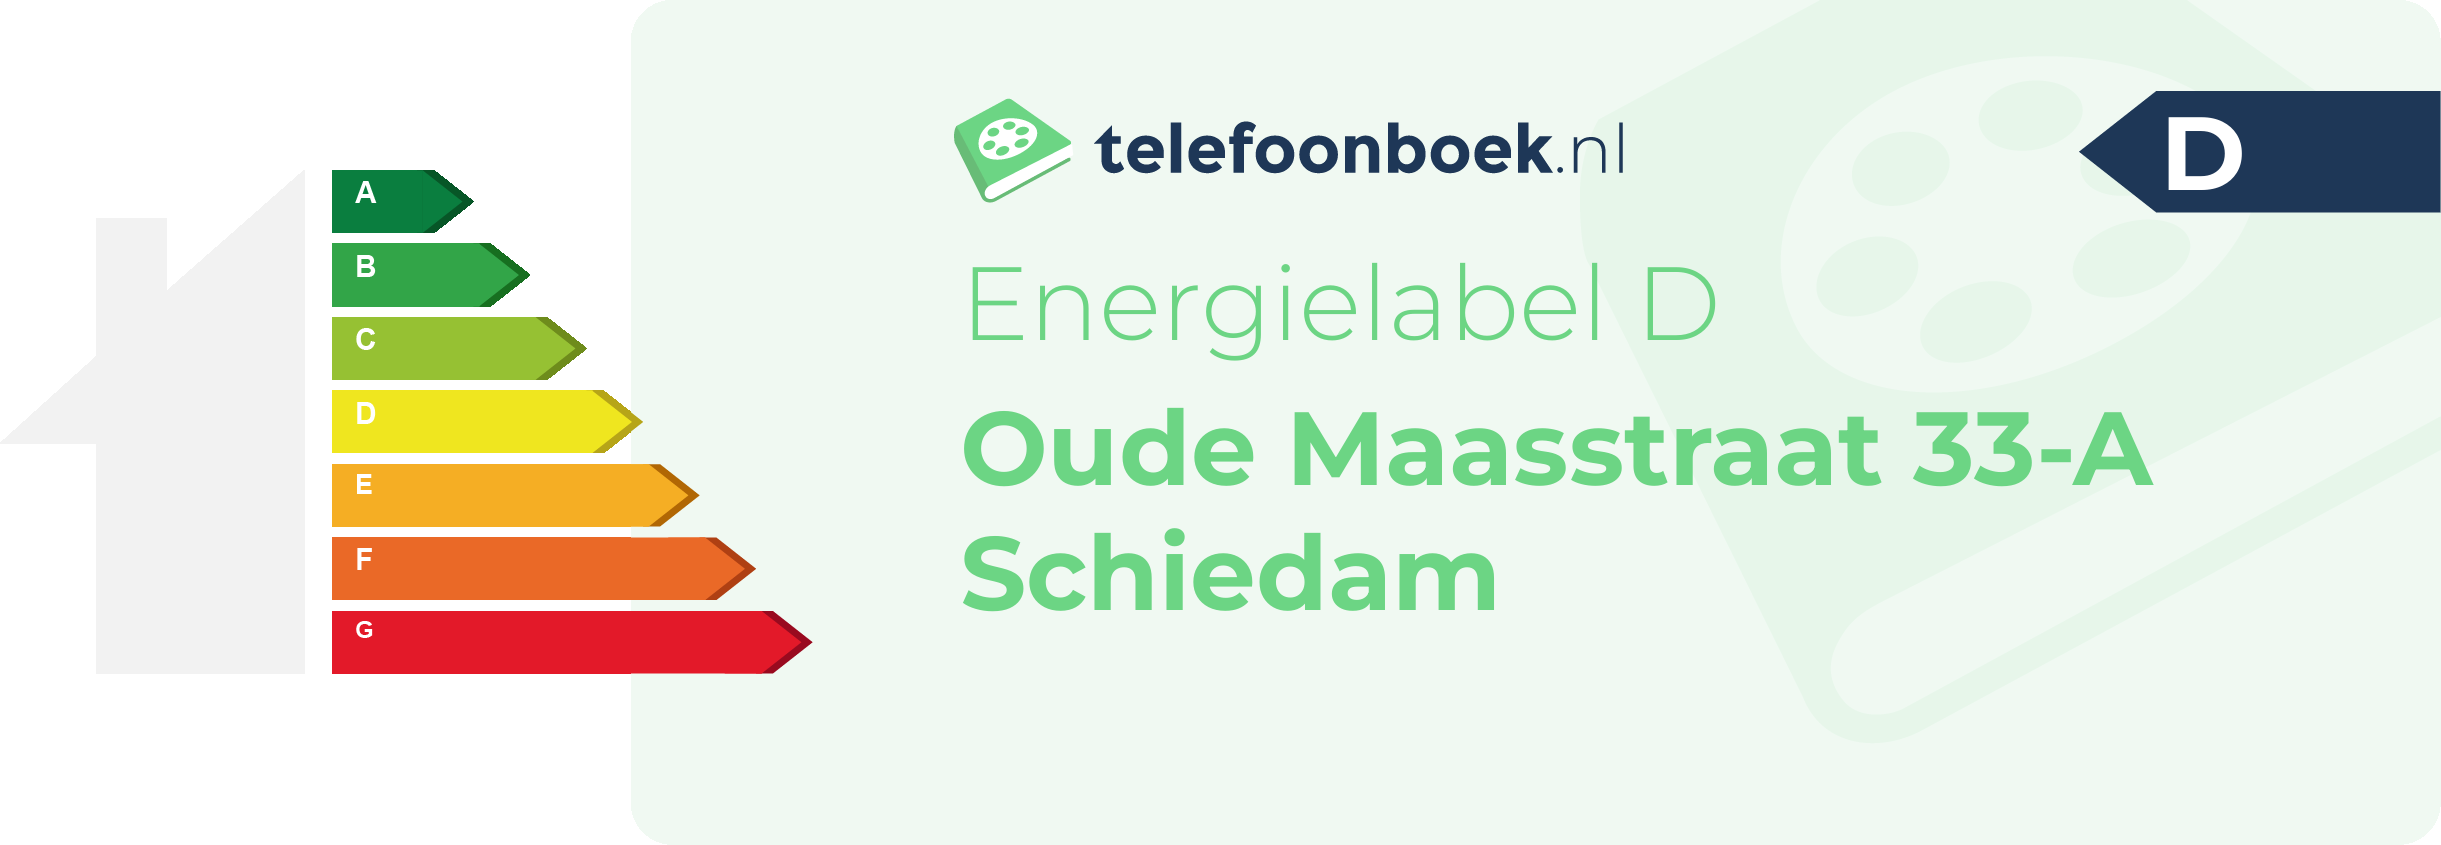 Energielabel Oude Maasstraat 33-A Schiedam